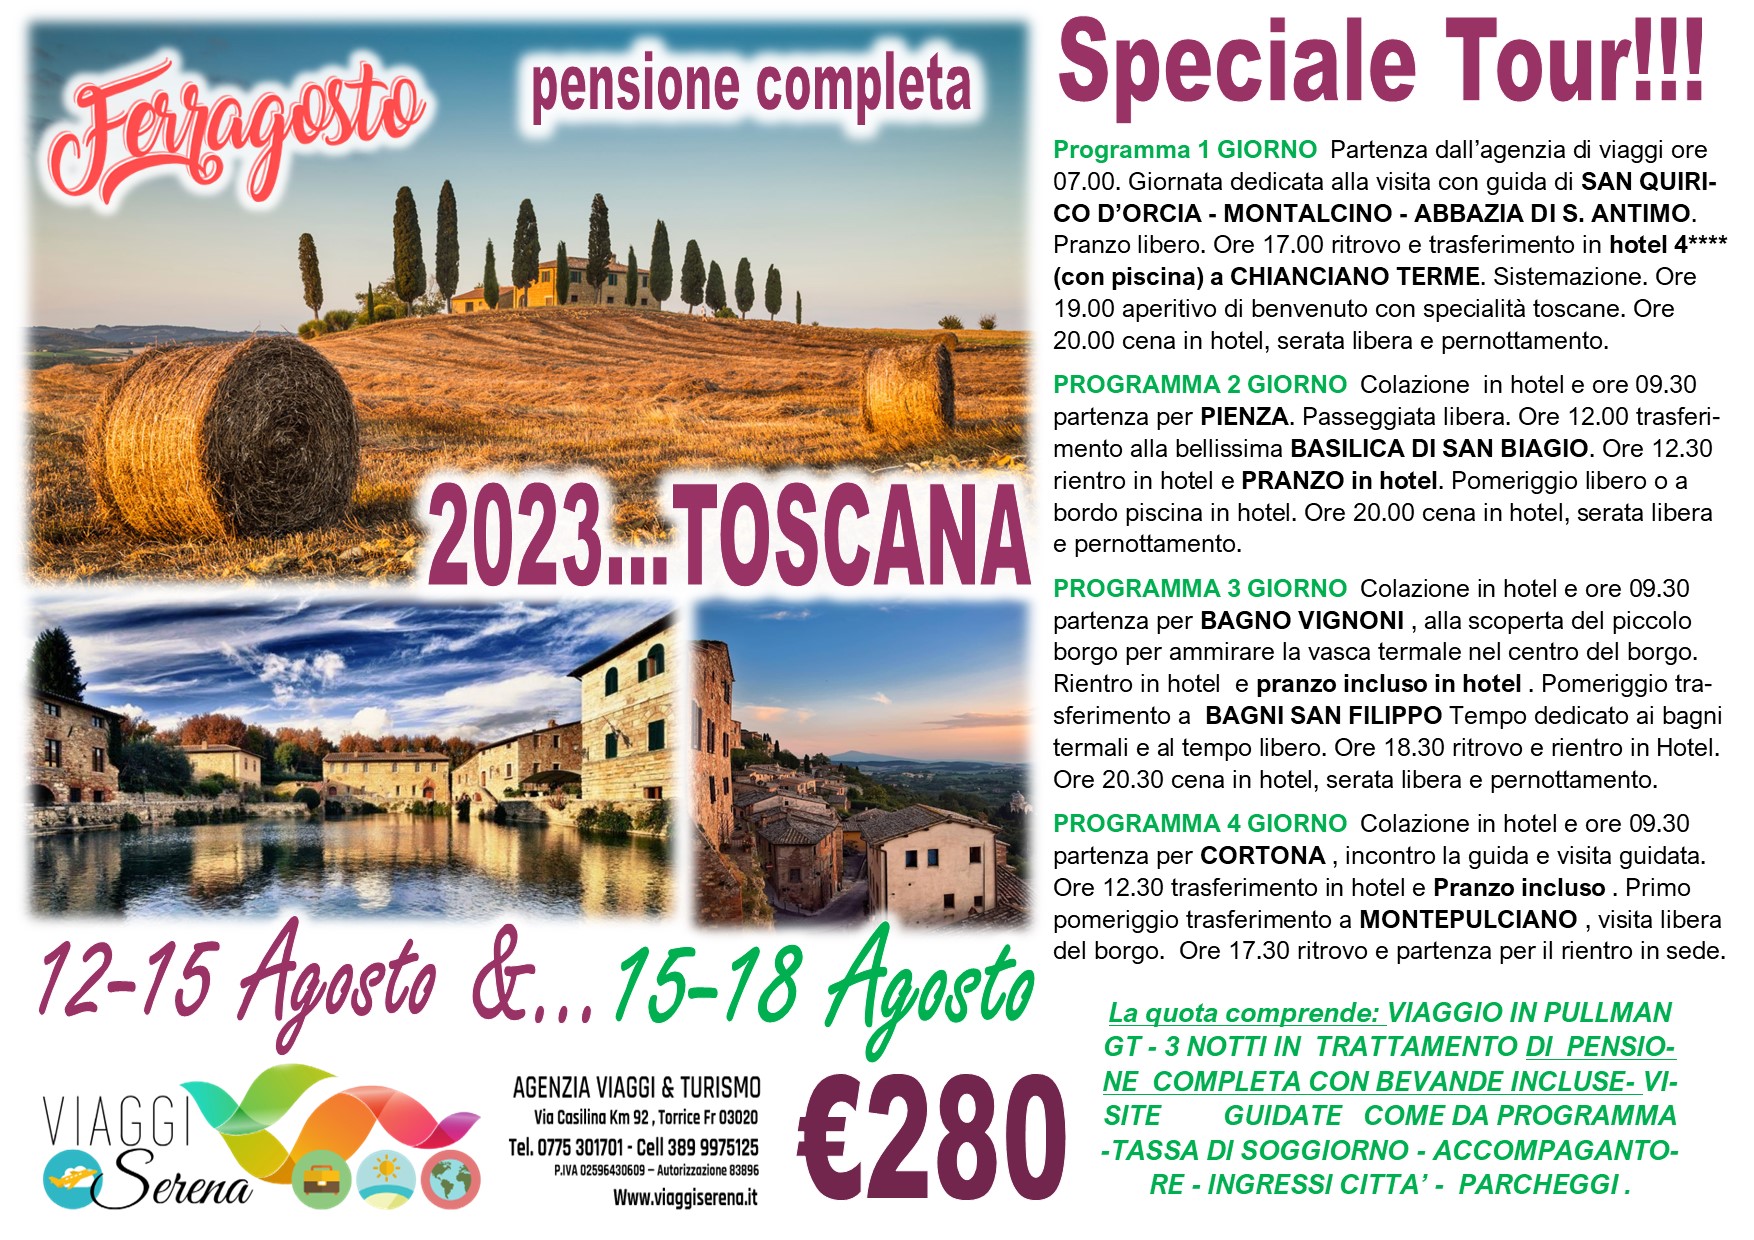 Viaggi di Gruppo: Speciale Tour Toscana  “Ferragosto 2023 ” 15-18 Agosto € 280,00